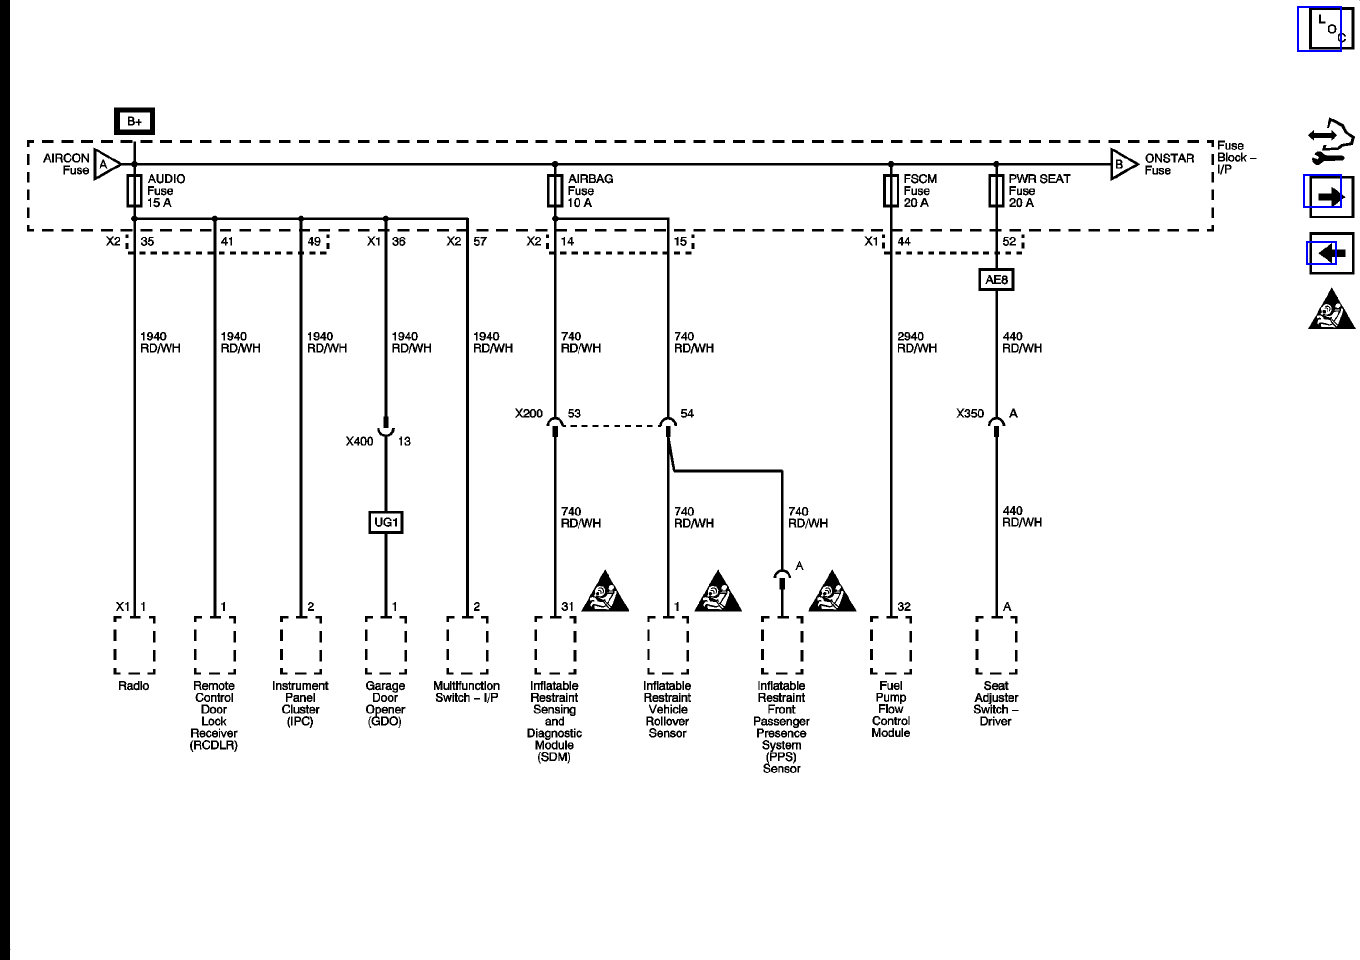 2003 Saturn Vue Engine Diagram